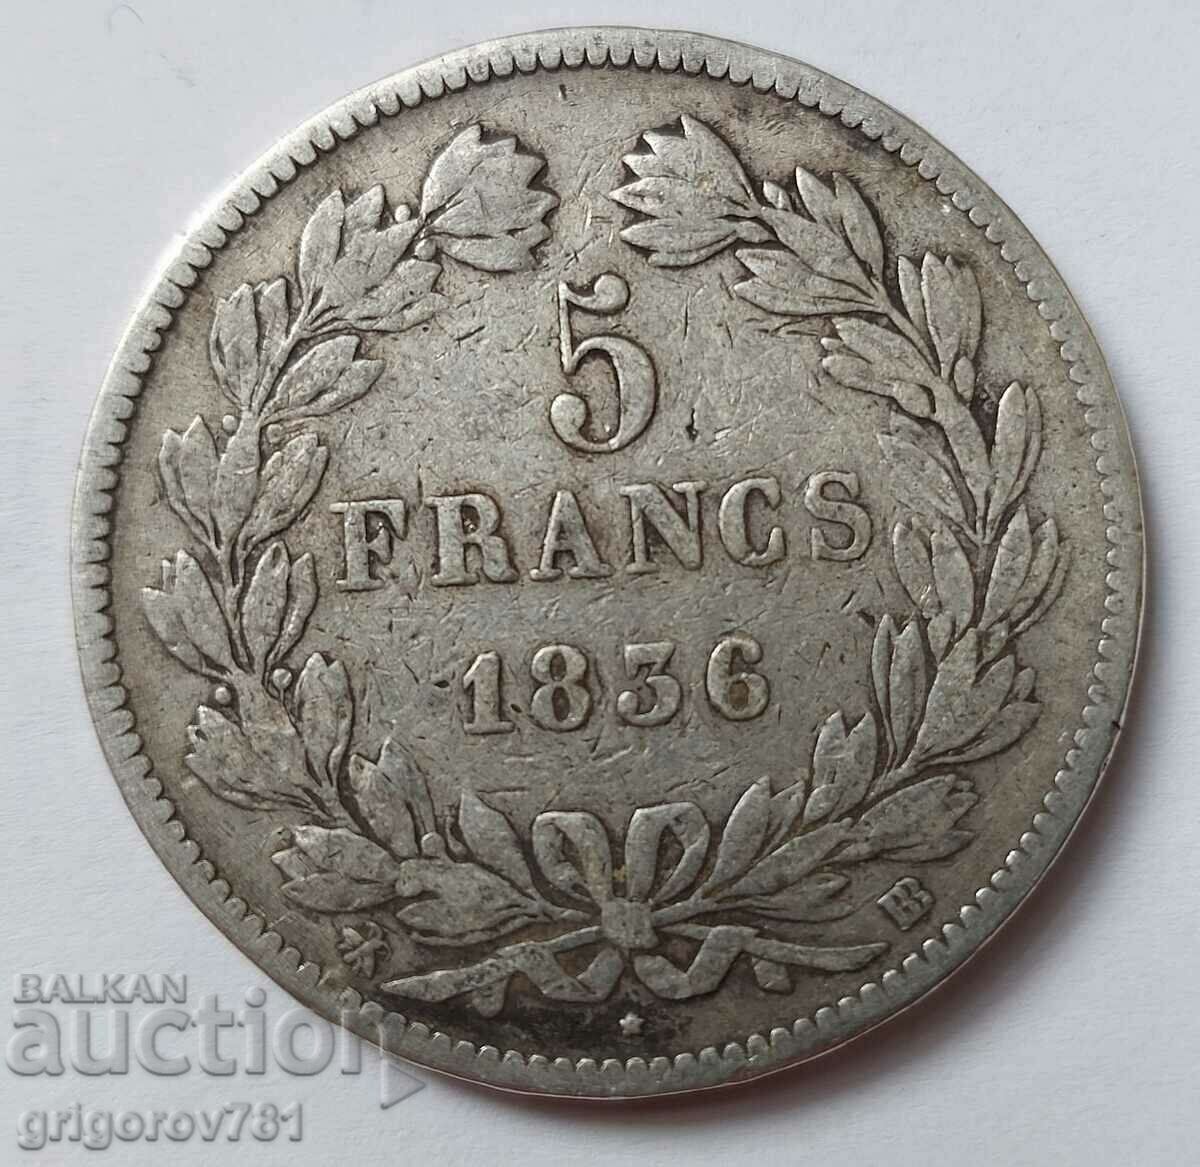 Ασημένιο 5 φράγκα Γαλλία 1836 BB - ασημένιο νόμισμα # 38